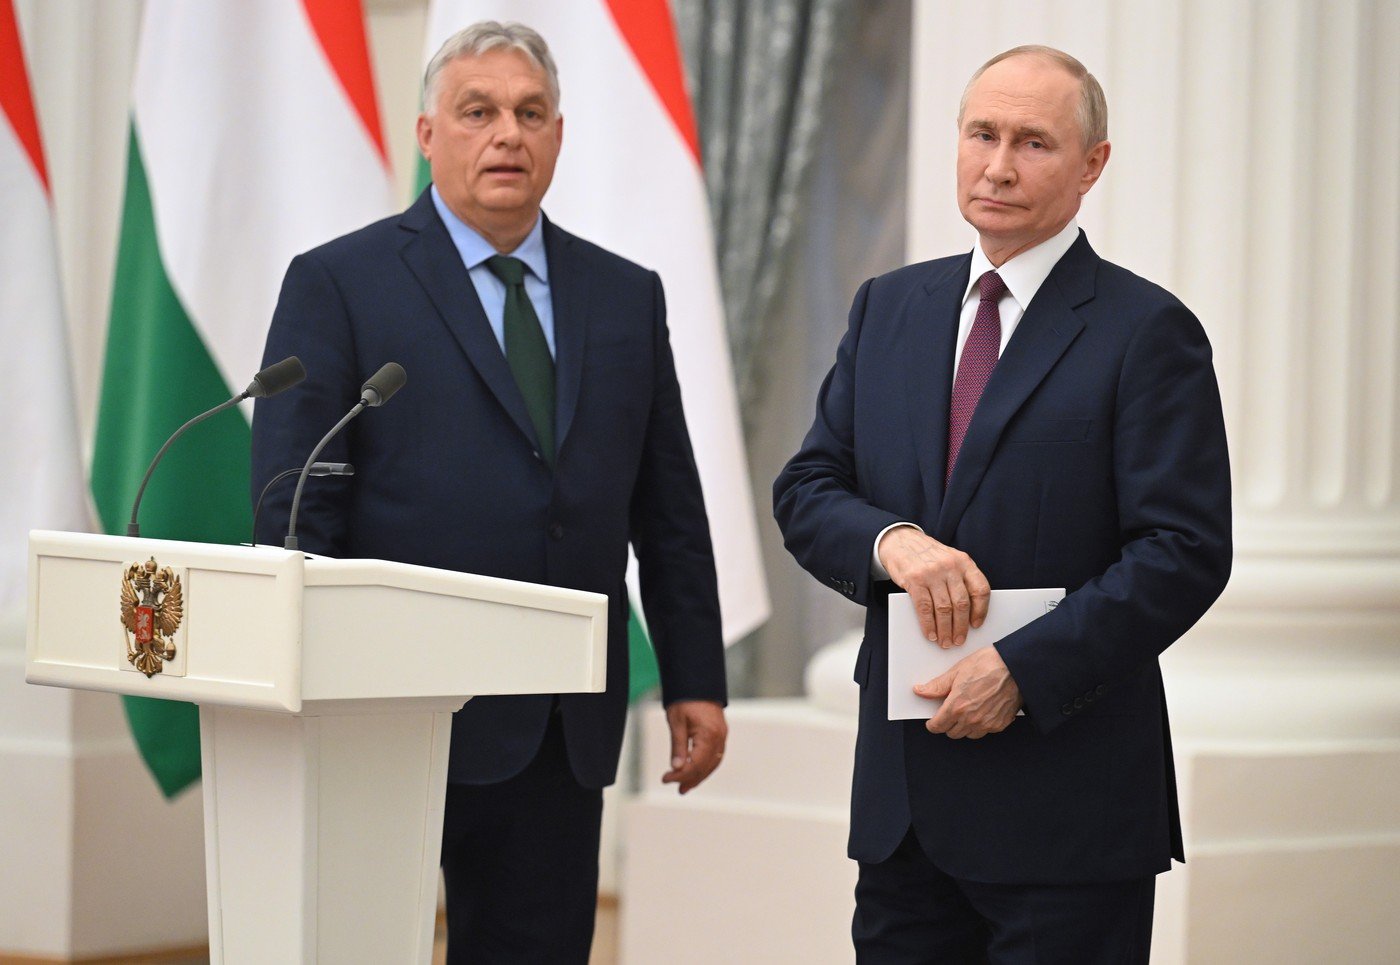 Félhet Orbán Viktor? Egy befolyásos kijevi lap brutális értékelést közölt a miniszterelnök oroszországi látogatásáról, középkori jelzővel illették Magyarországot